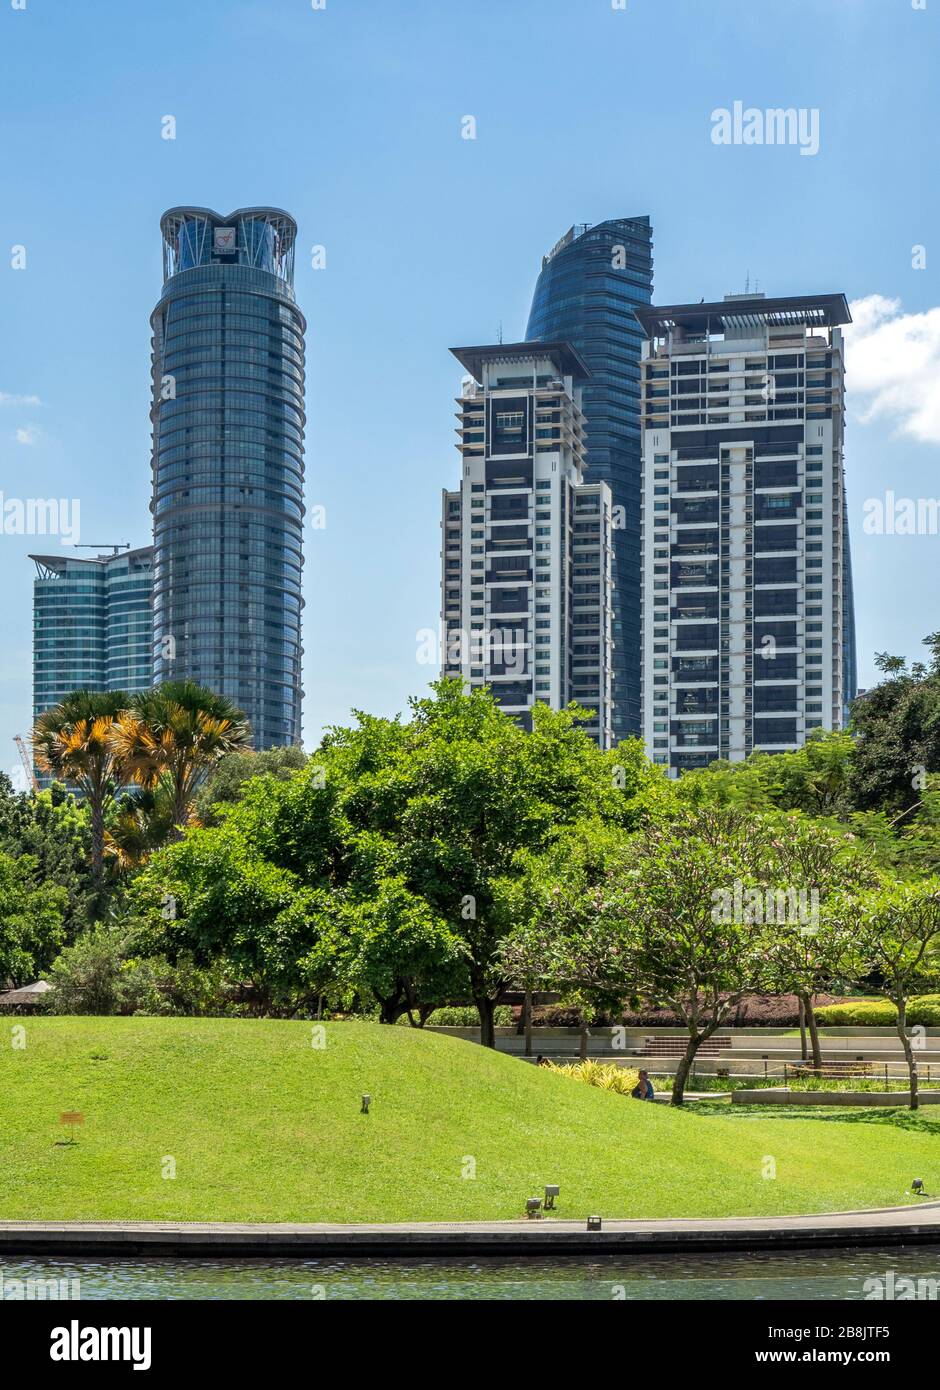 Bureaux et tours résidentielles de haute hauteur vue depuis le parc du lac KLCC Kuala Lumpur Malaisie. Banque D'Images